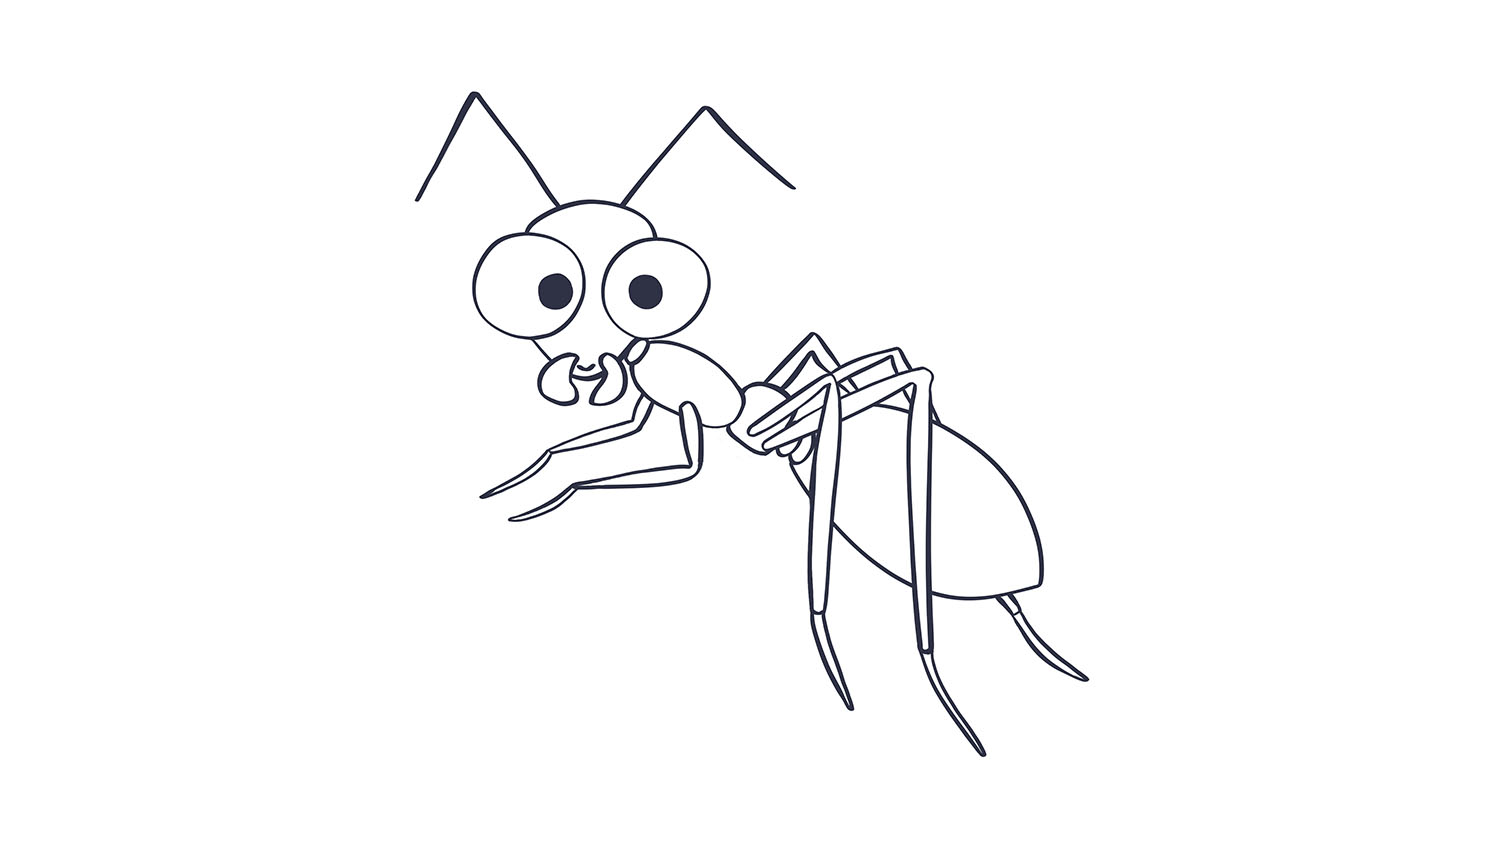 62. Hormiga / Ant. 103dibujos